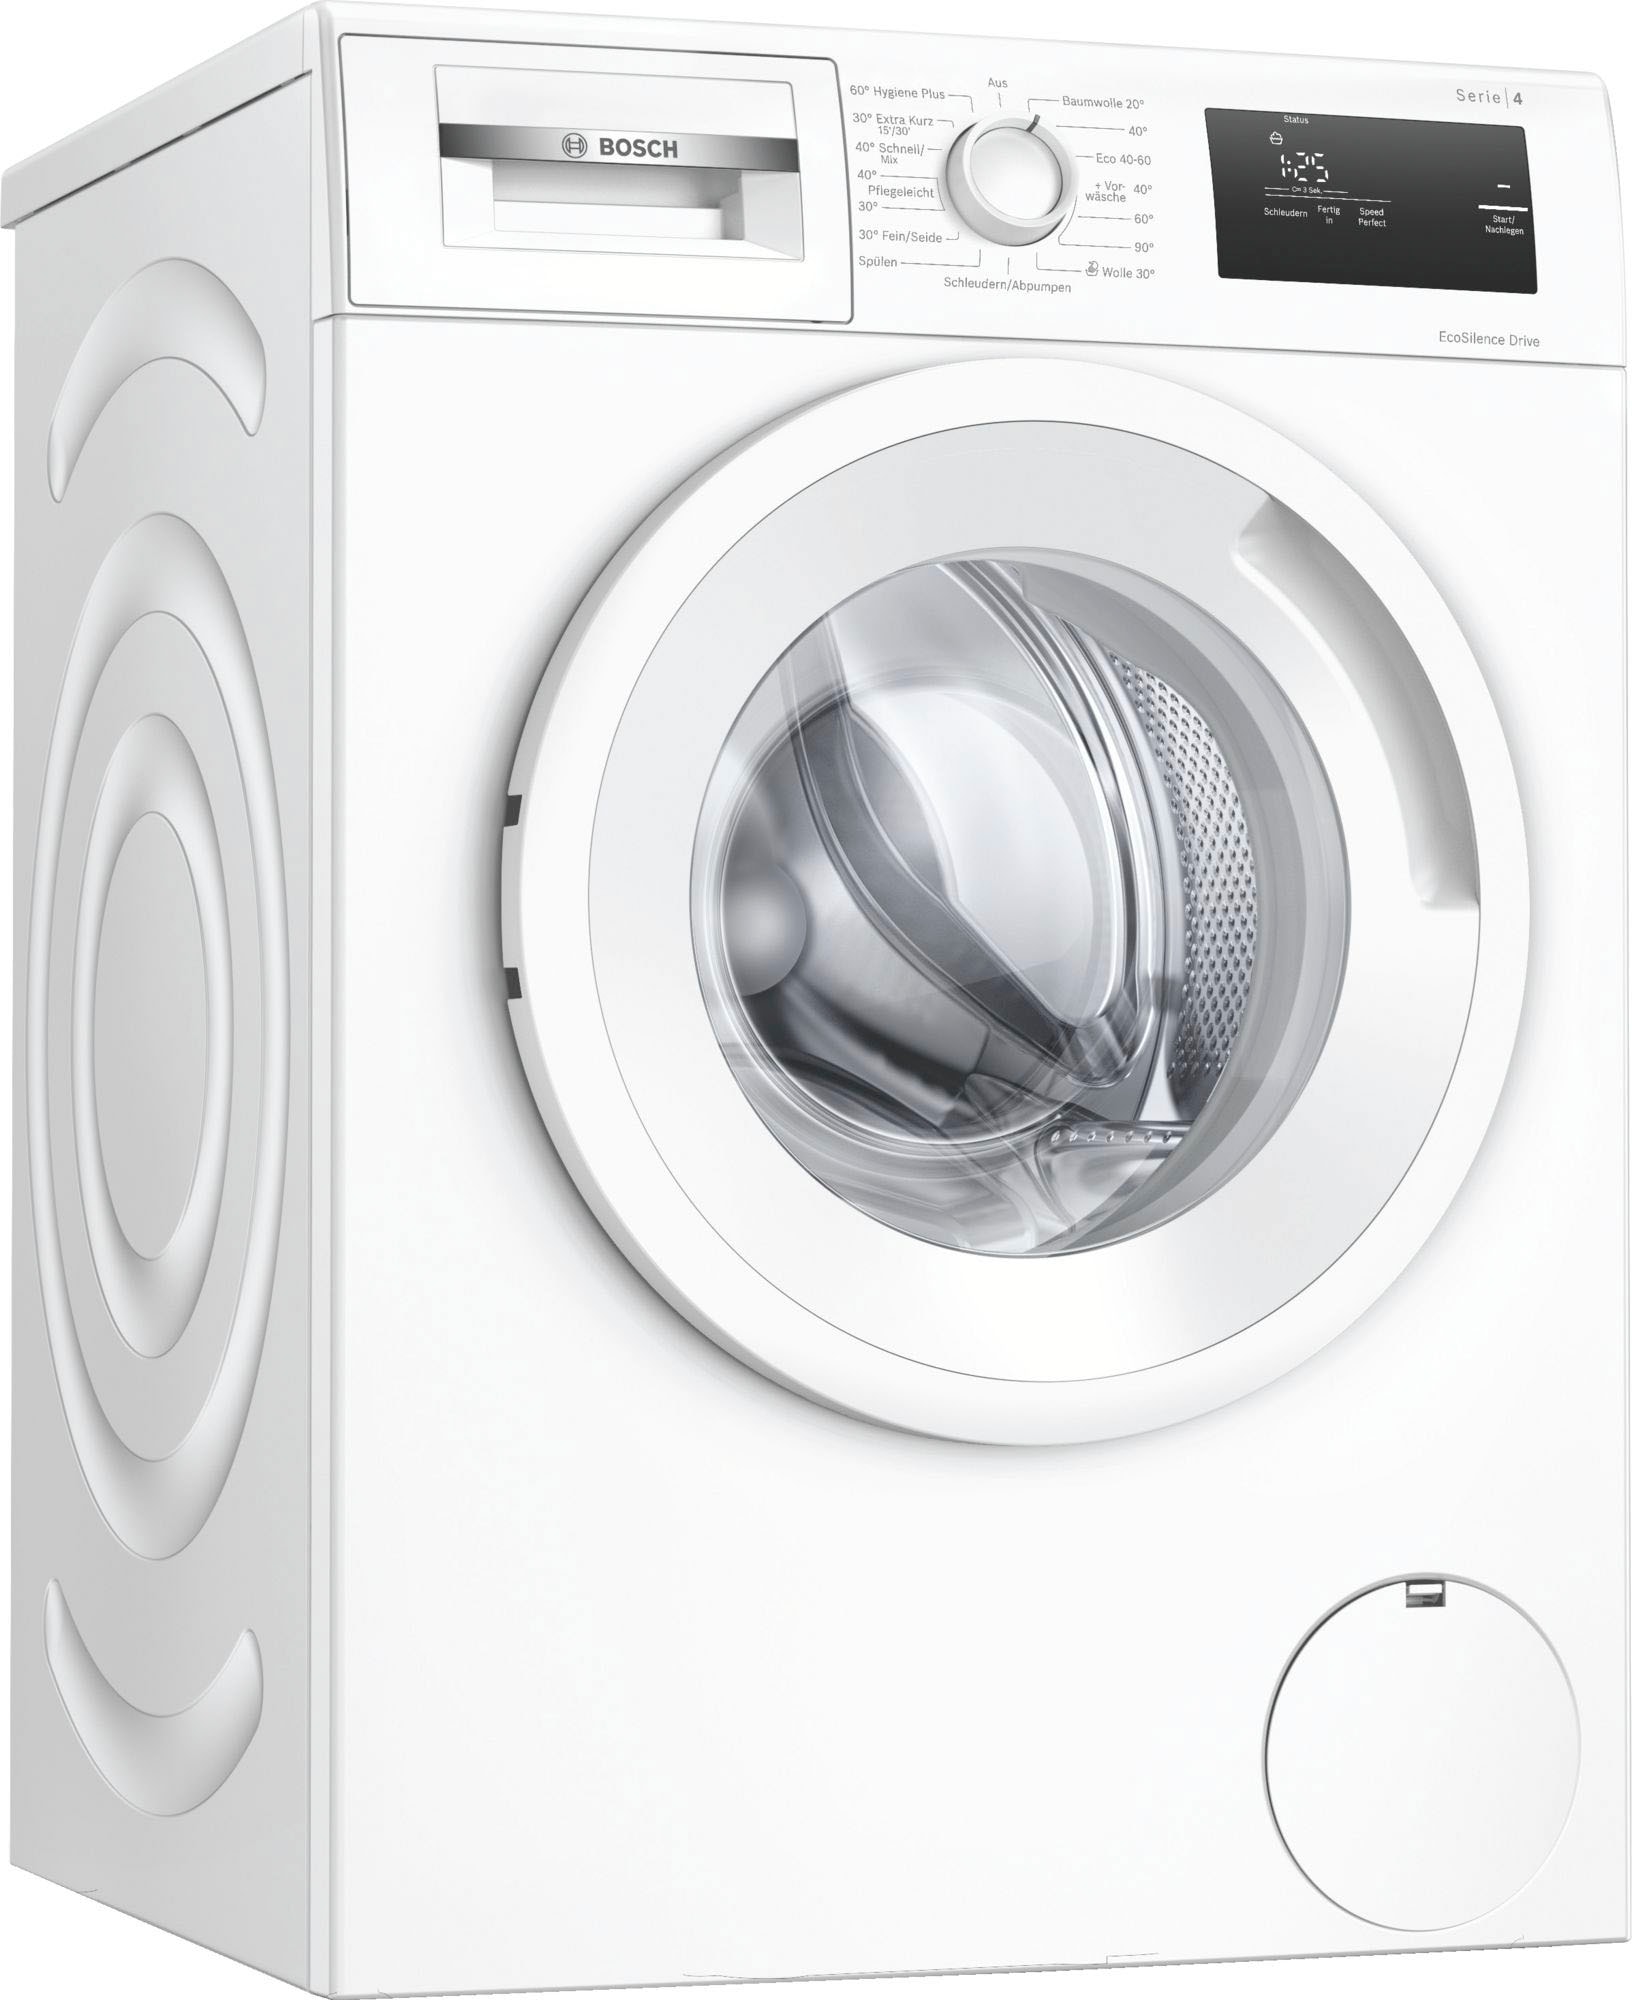 BOSCH Waschmaschine »WAN280A3«, Serie 4, WAN280A3, 7 kg, 1400 U/min  bestellen bei OTTO